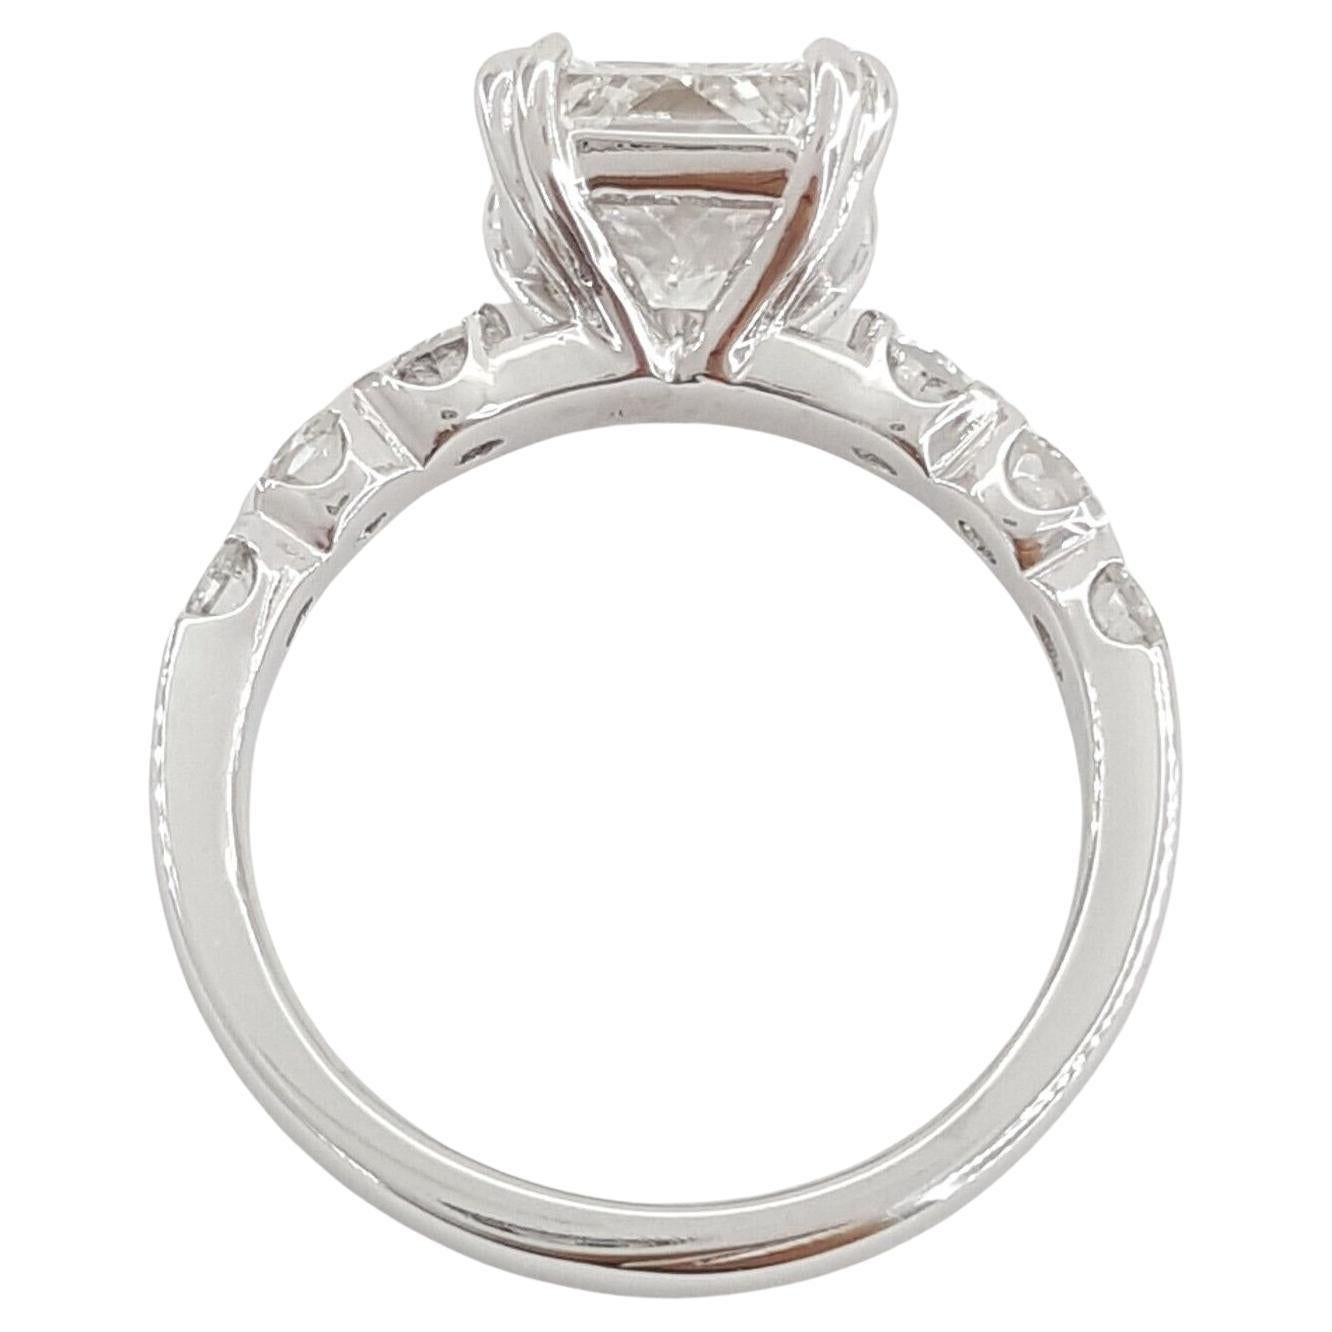 Ein außergewöhnlicher GIA-zertifizierter Diamant im Brillantschliff mit einem Gewicht von 2,06 ct, Farbe: E, Reinheit: VS2. Der zentrale Diamant hat eine sehr gute Politur, gute Symmetrie und keine Fluoreszenz. 

 Ausgezeichneter Glanz und